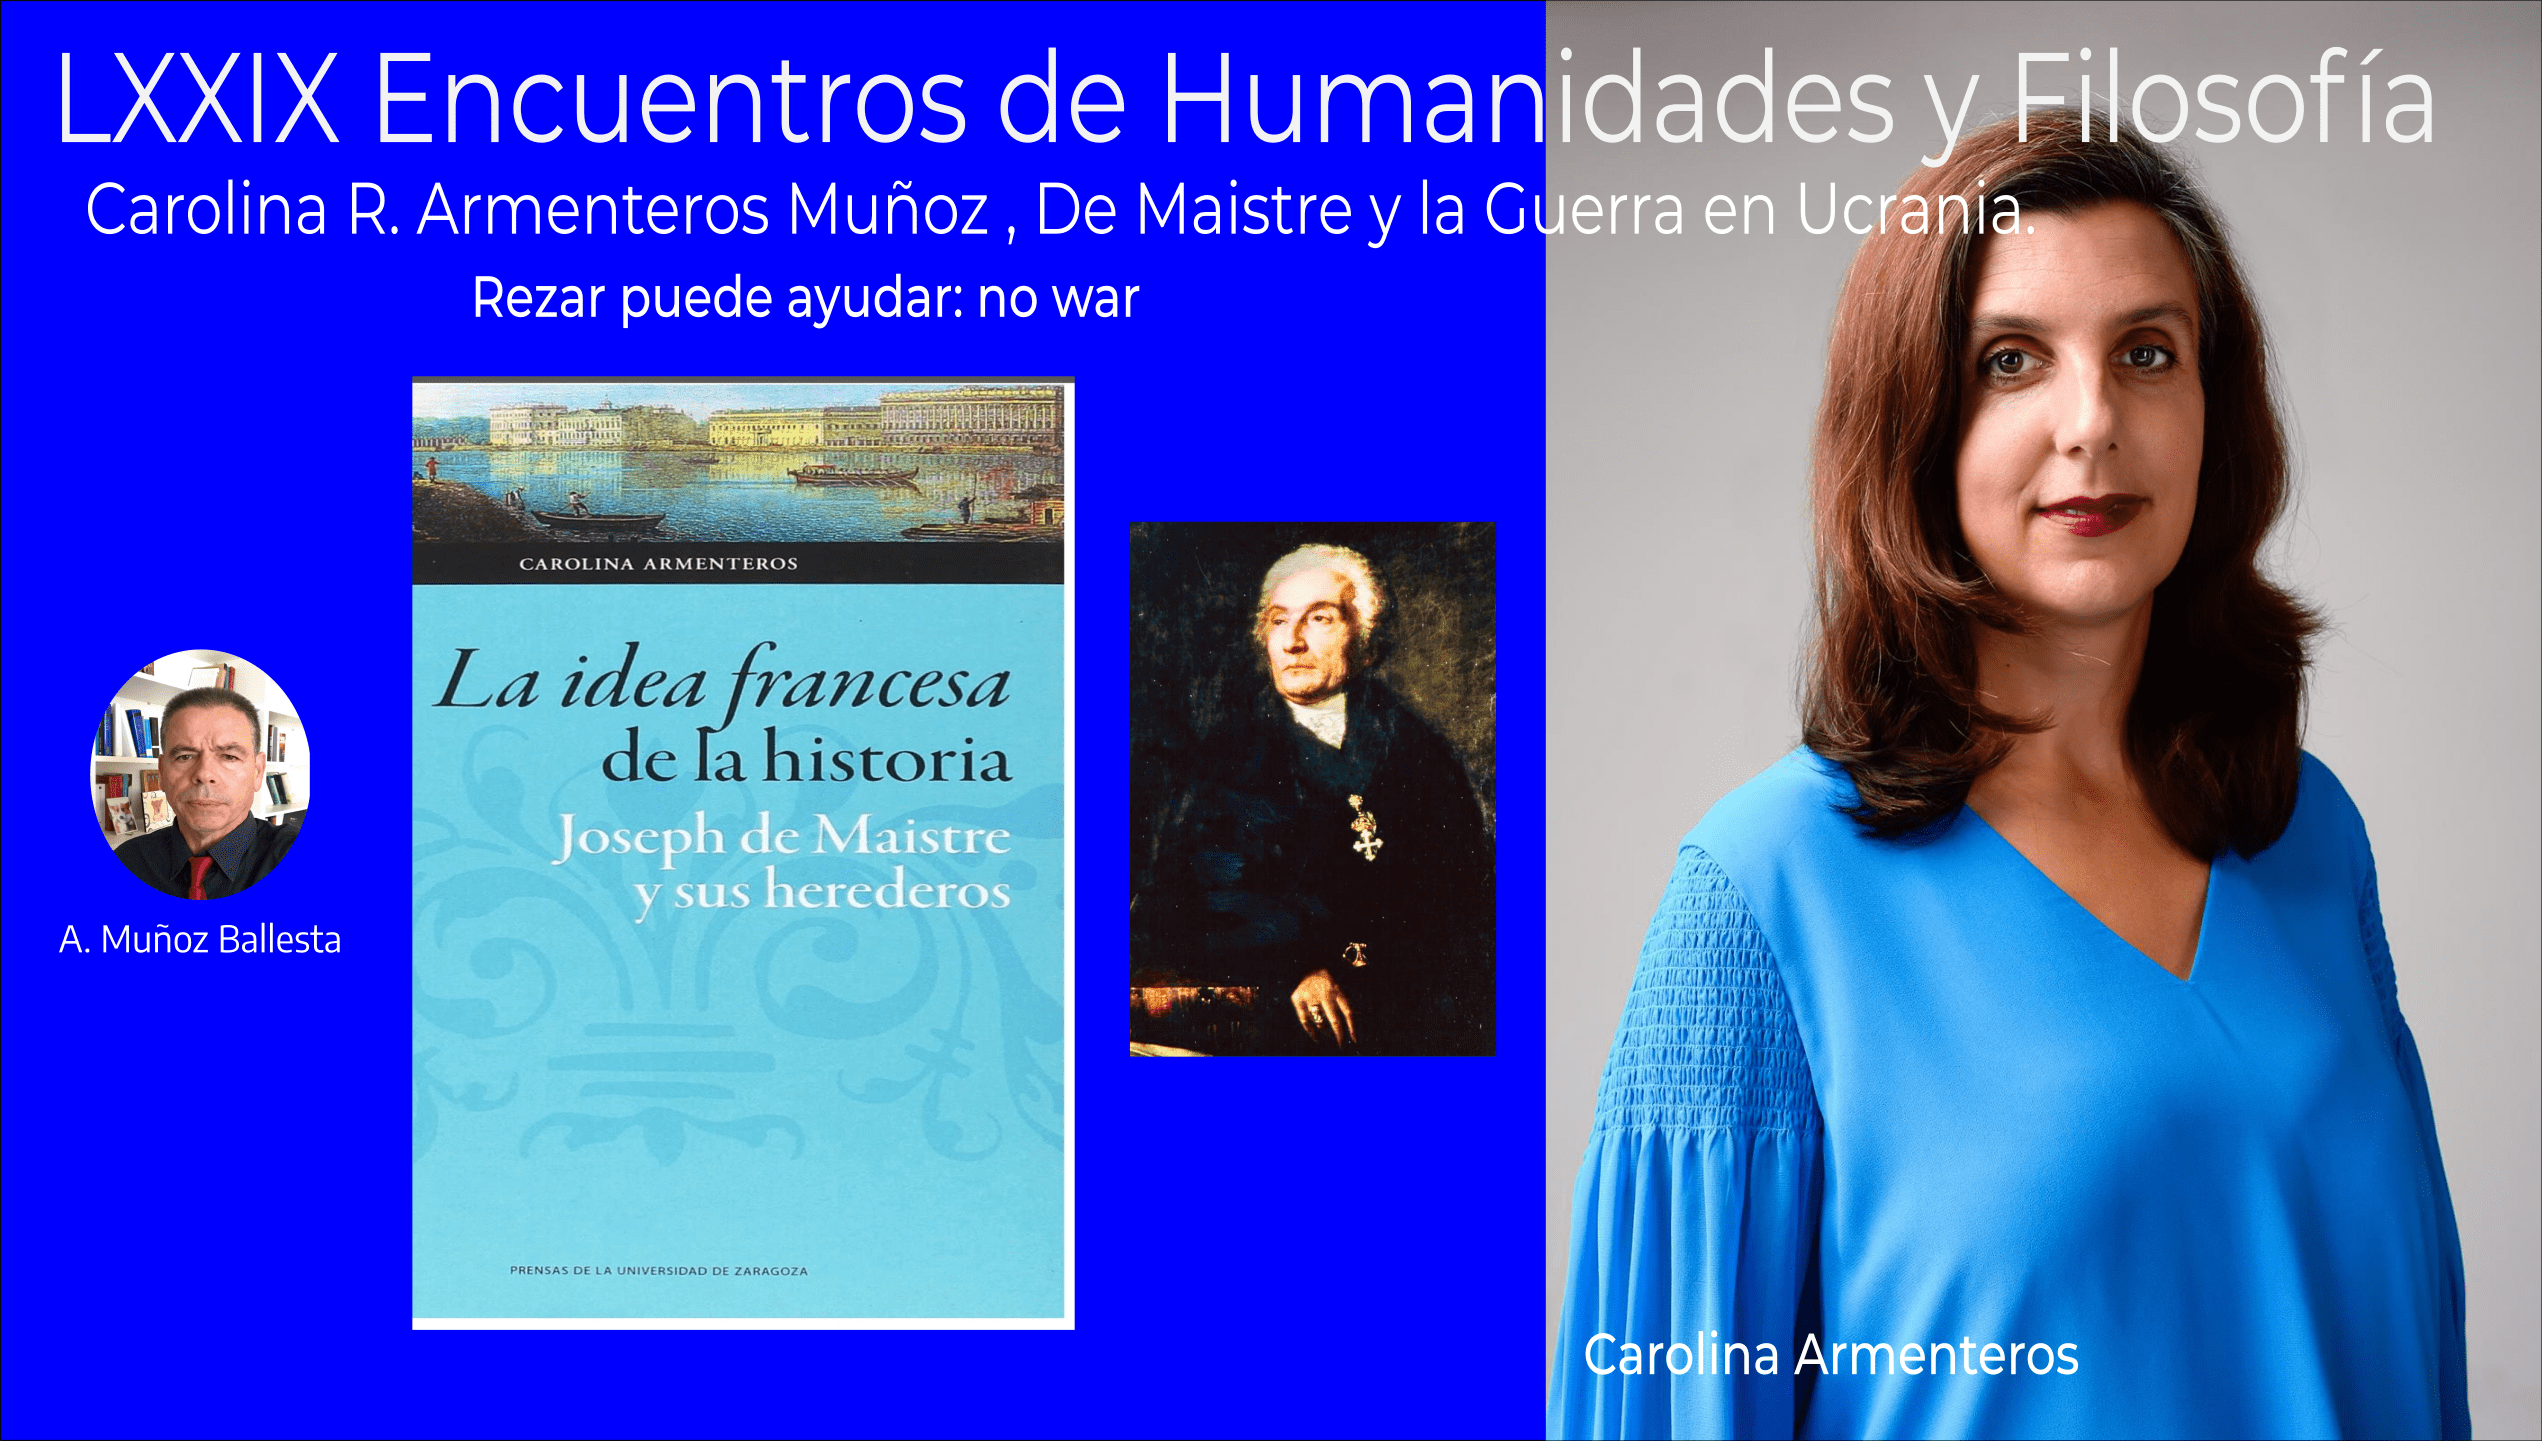 LXXIX Encuentros Humanidades y Filosofía, Carolina R. Armenteros Muñoz, De Maistre y la Guerra en Ucrania.